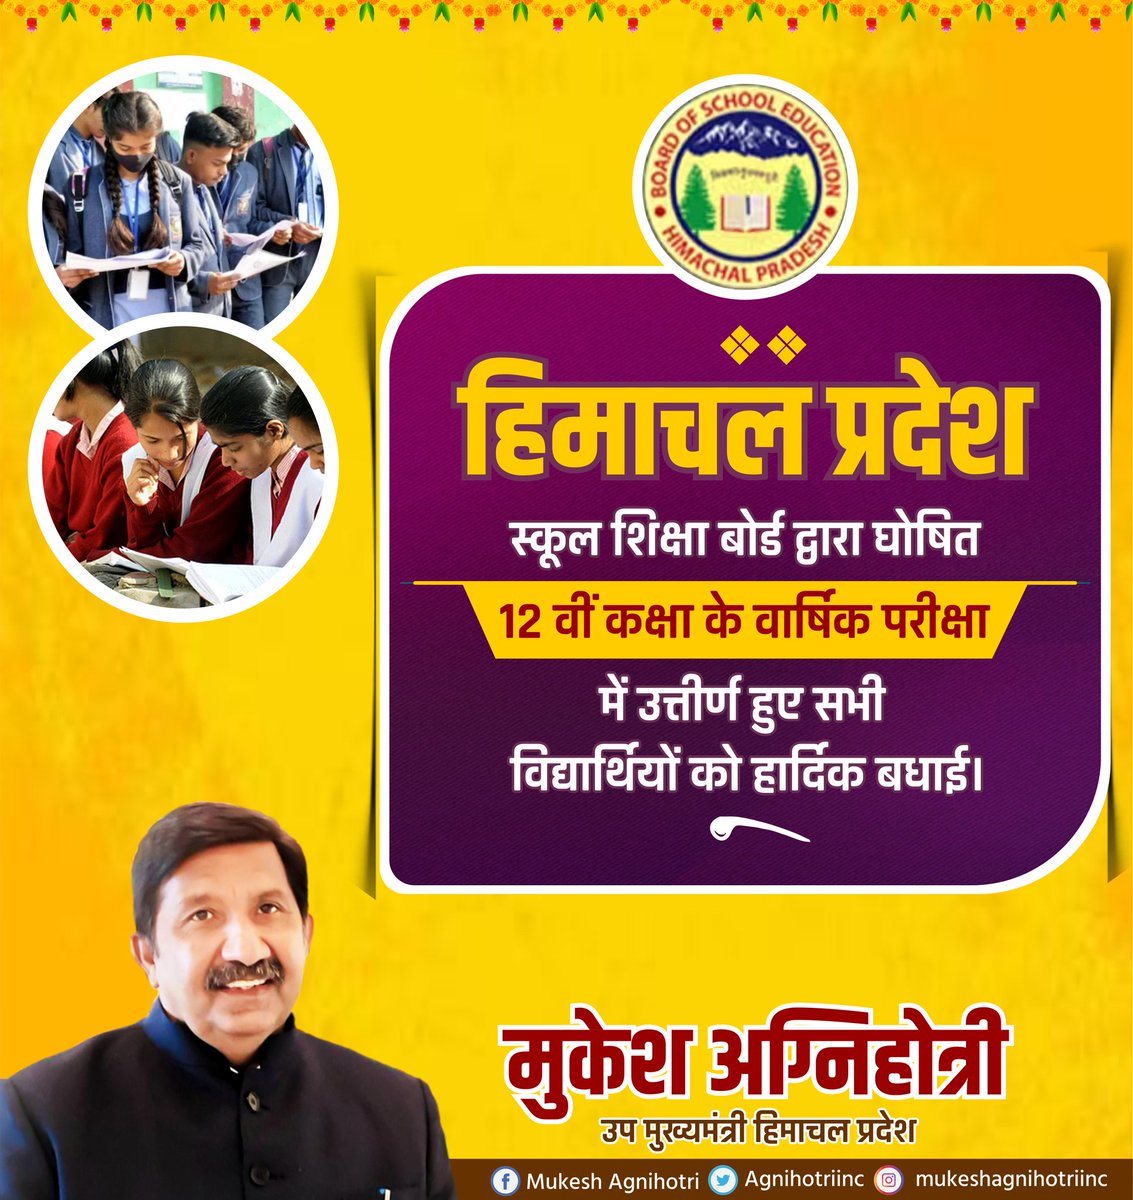 हिमाचल प्रदेश स्कूल शिक्षा बोर्ड द्वारा घोषित 12 वीं कक्षा के वार्षिक परीक्षा परिणाम में उत्तीर्ण हुए सभी विद्यार्थियों को हार्दिक बधाई। आप सभी के उज्जवल भविष्य की कामना करते हैं।